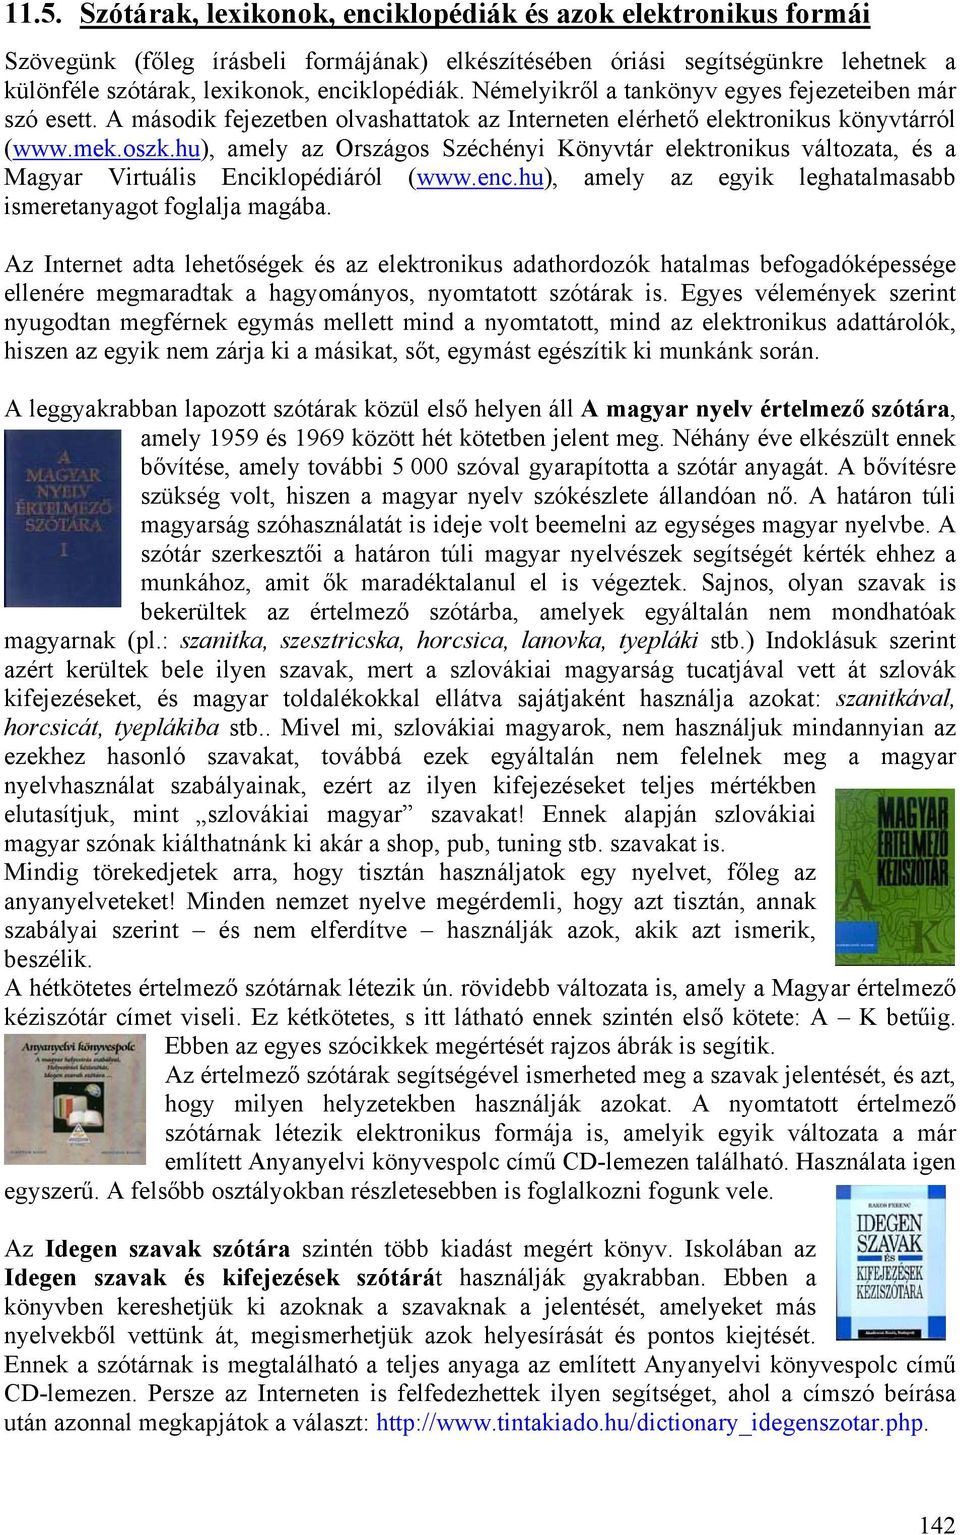 hu), amely az Országos Széchényi Könyvtár elektronikus változata, és a Magyar Virtuális Enciklopédiáról (www.enc.hu), amely az egyik leghatalmasabb ismeretanyagot foglalja magába.